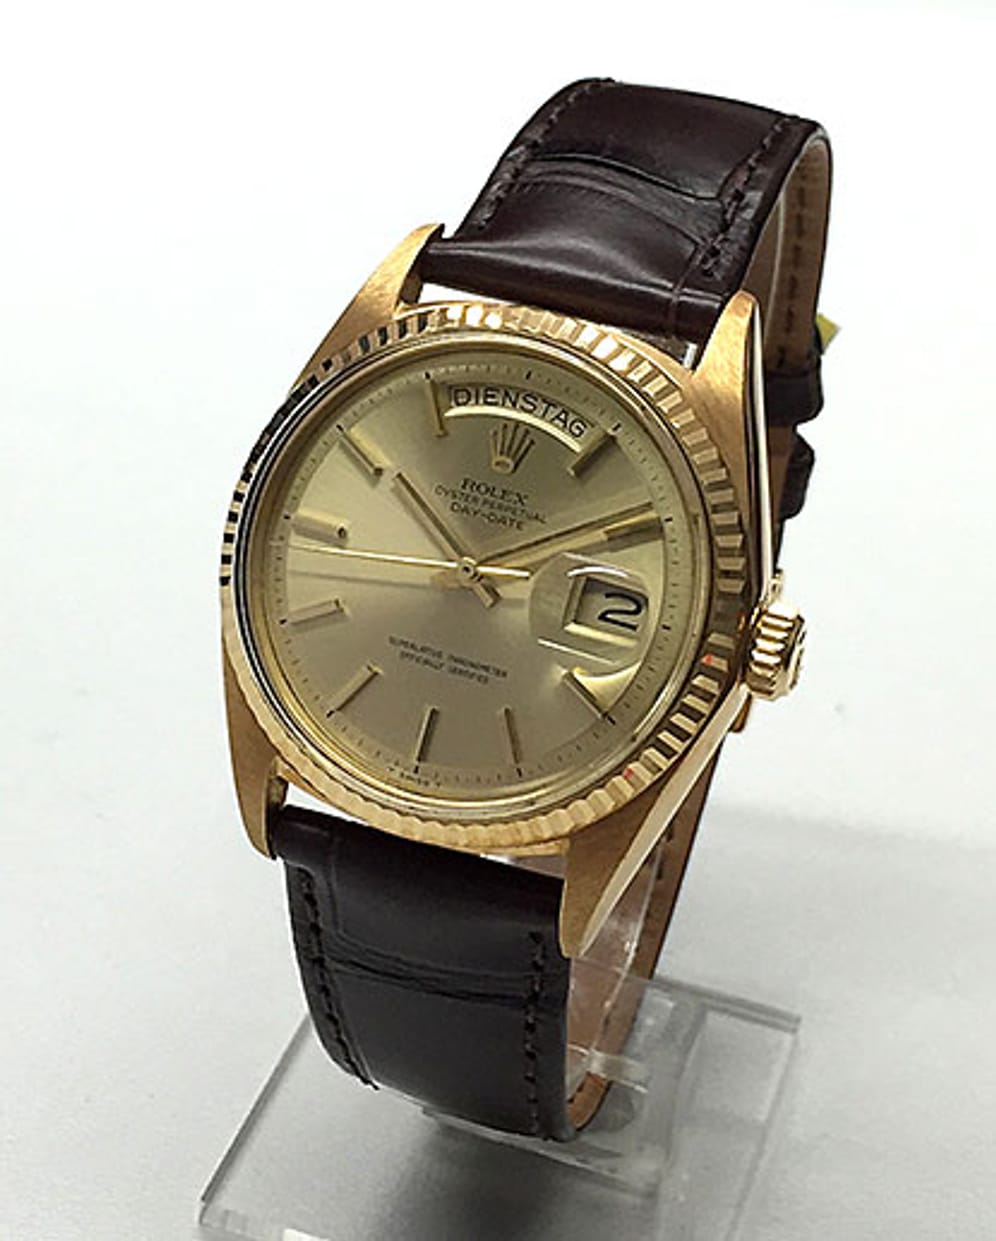 Die Rolex Day-Date in 18 Karat Gelbgold ist in diesem Top-Zustand ein echtes Sammlerstück. Der Automatik-Chronometer kommt in der Originalbox, zeigt die Wochentage in Deutsch an und kostet 5500 Euro.